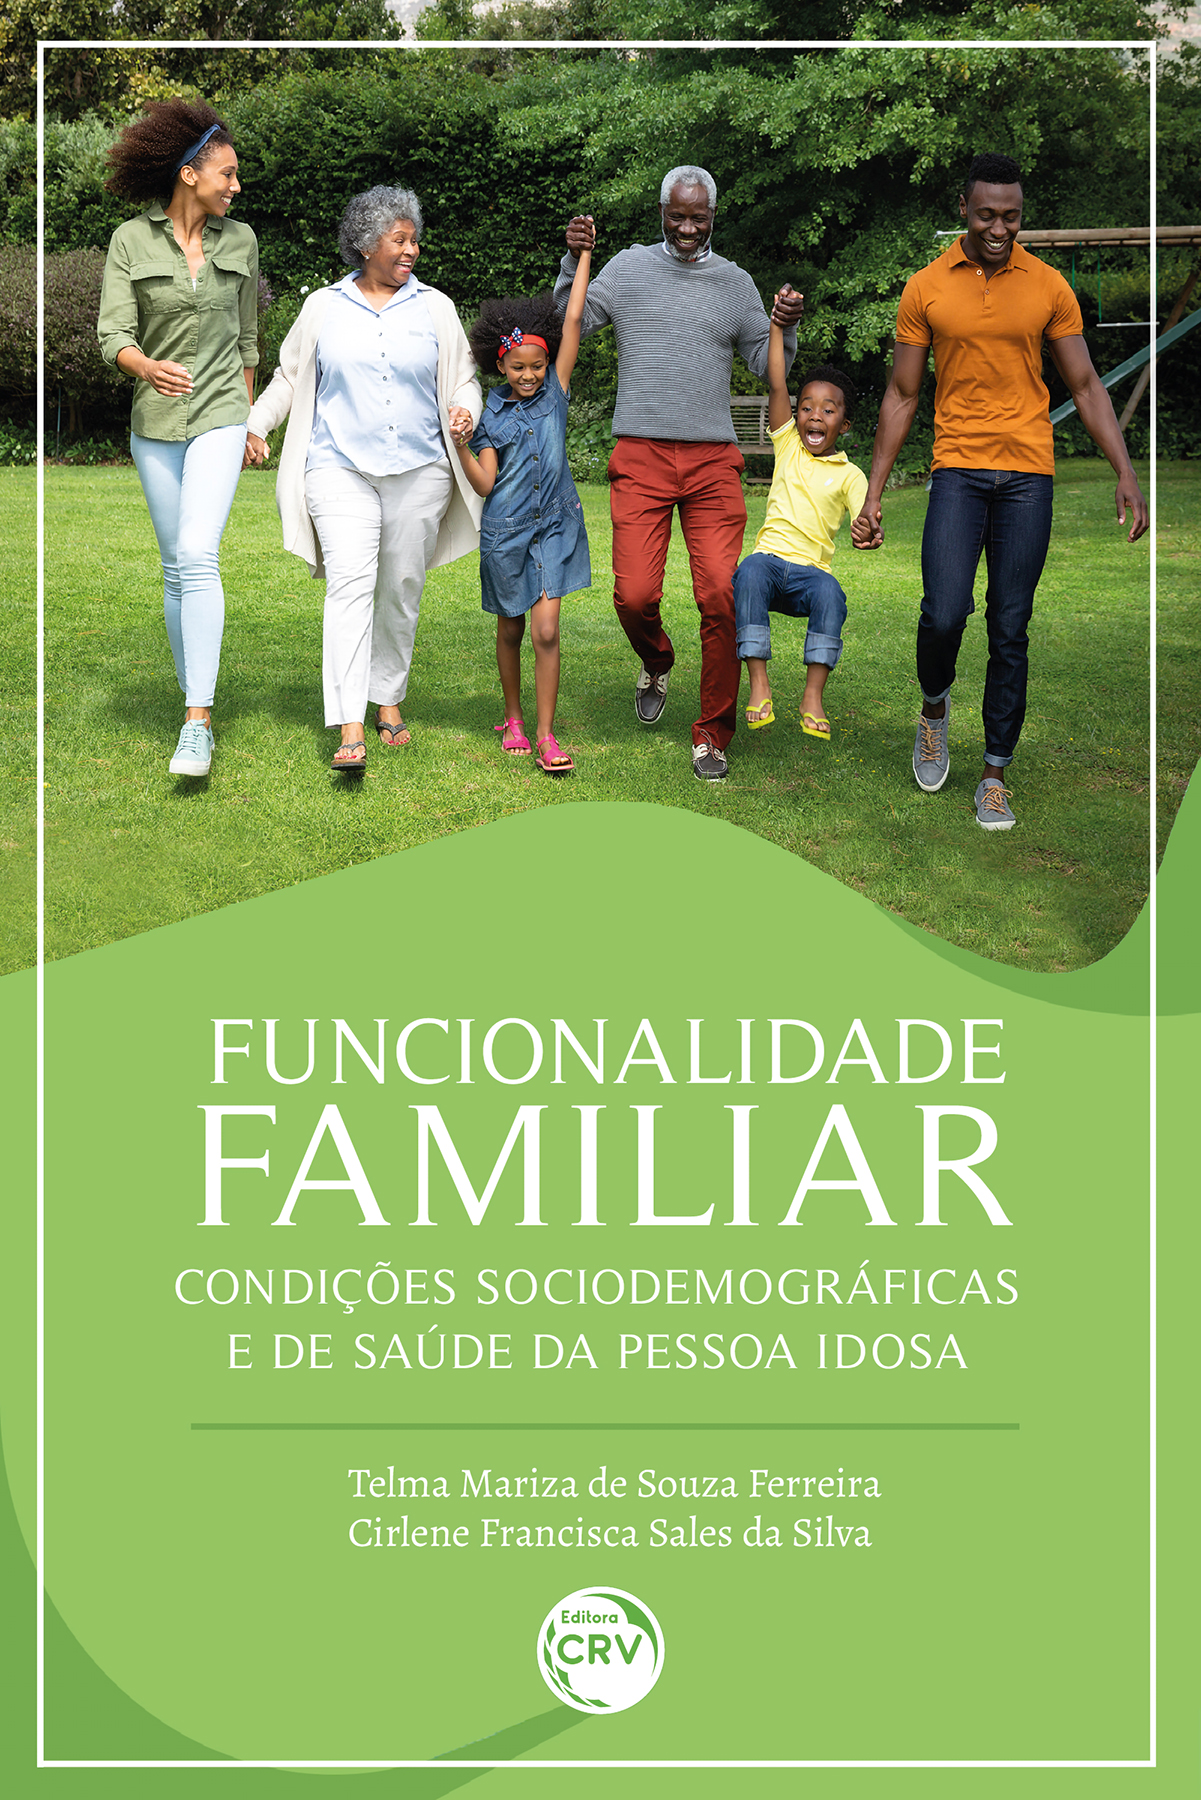 Capa do livro: Funcionalidade familiar, condições sociodemográficas e de saúde da pessoa idosa